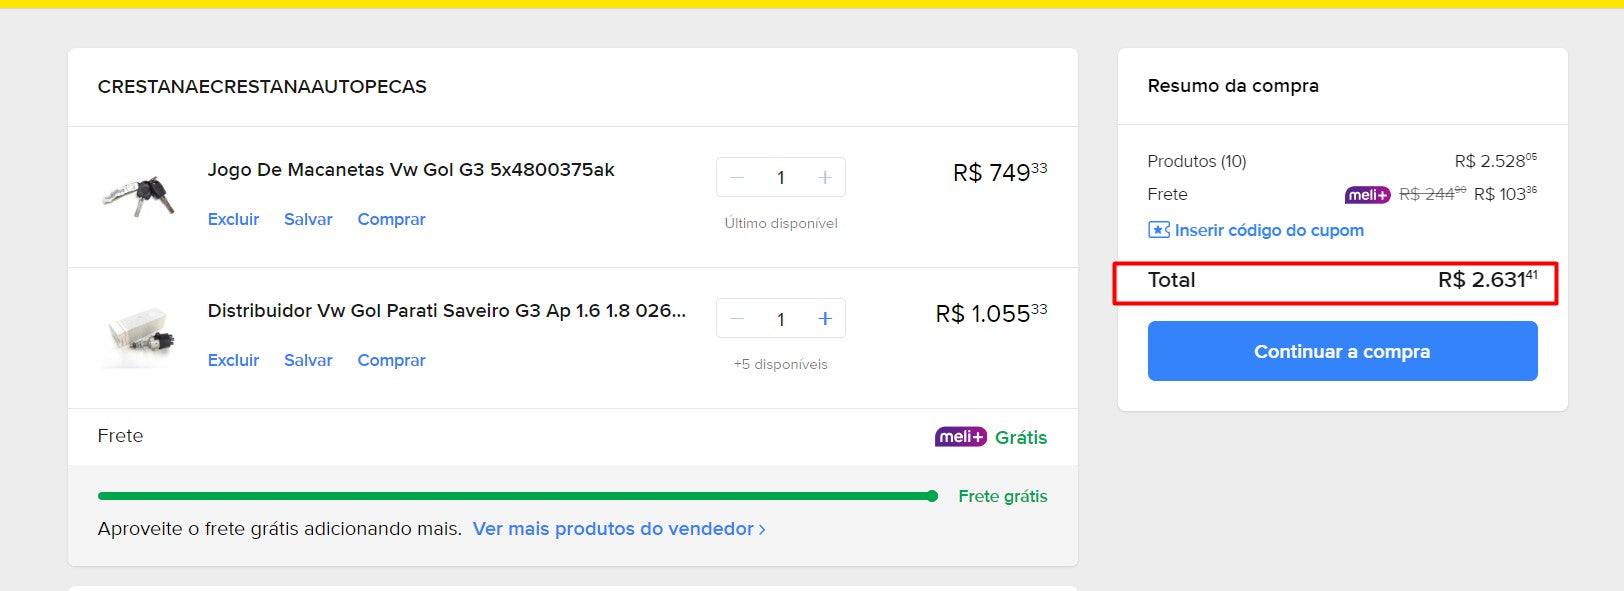 Comprador personal | Comprar desde Brasil -PIEZAS DE COCHE - 11 artículos (DDP)